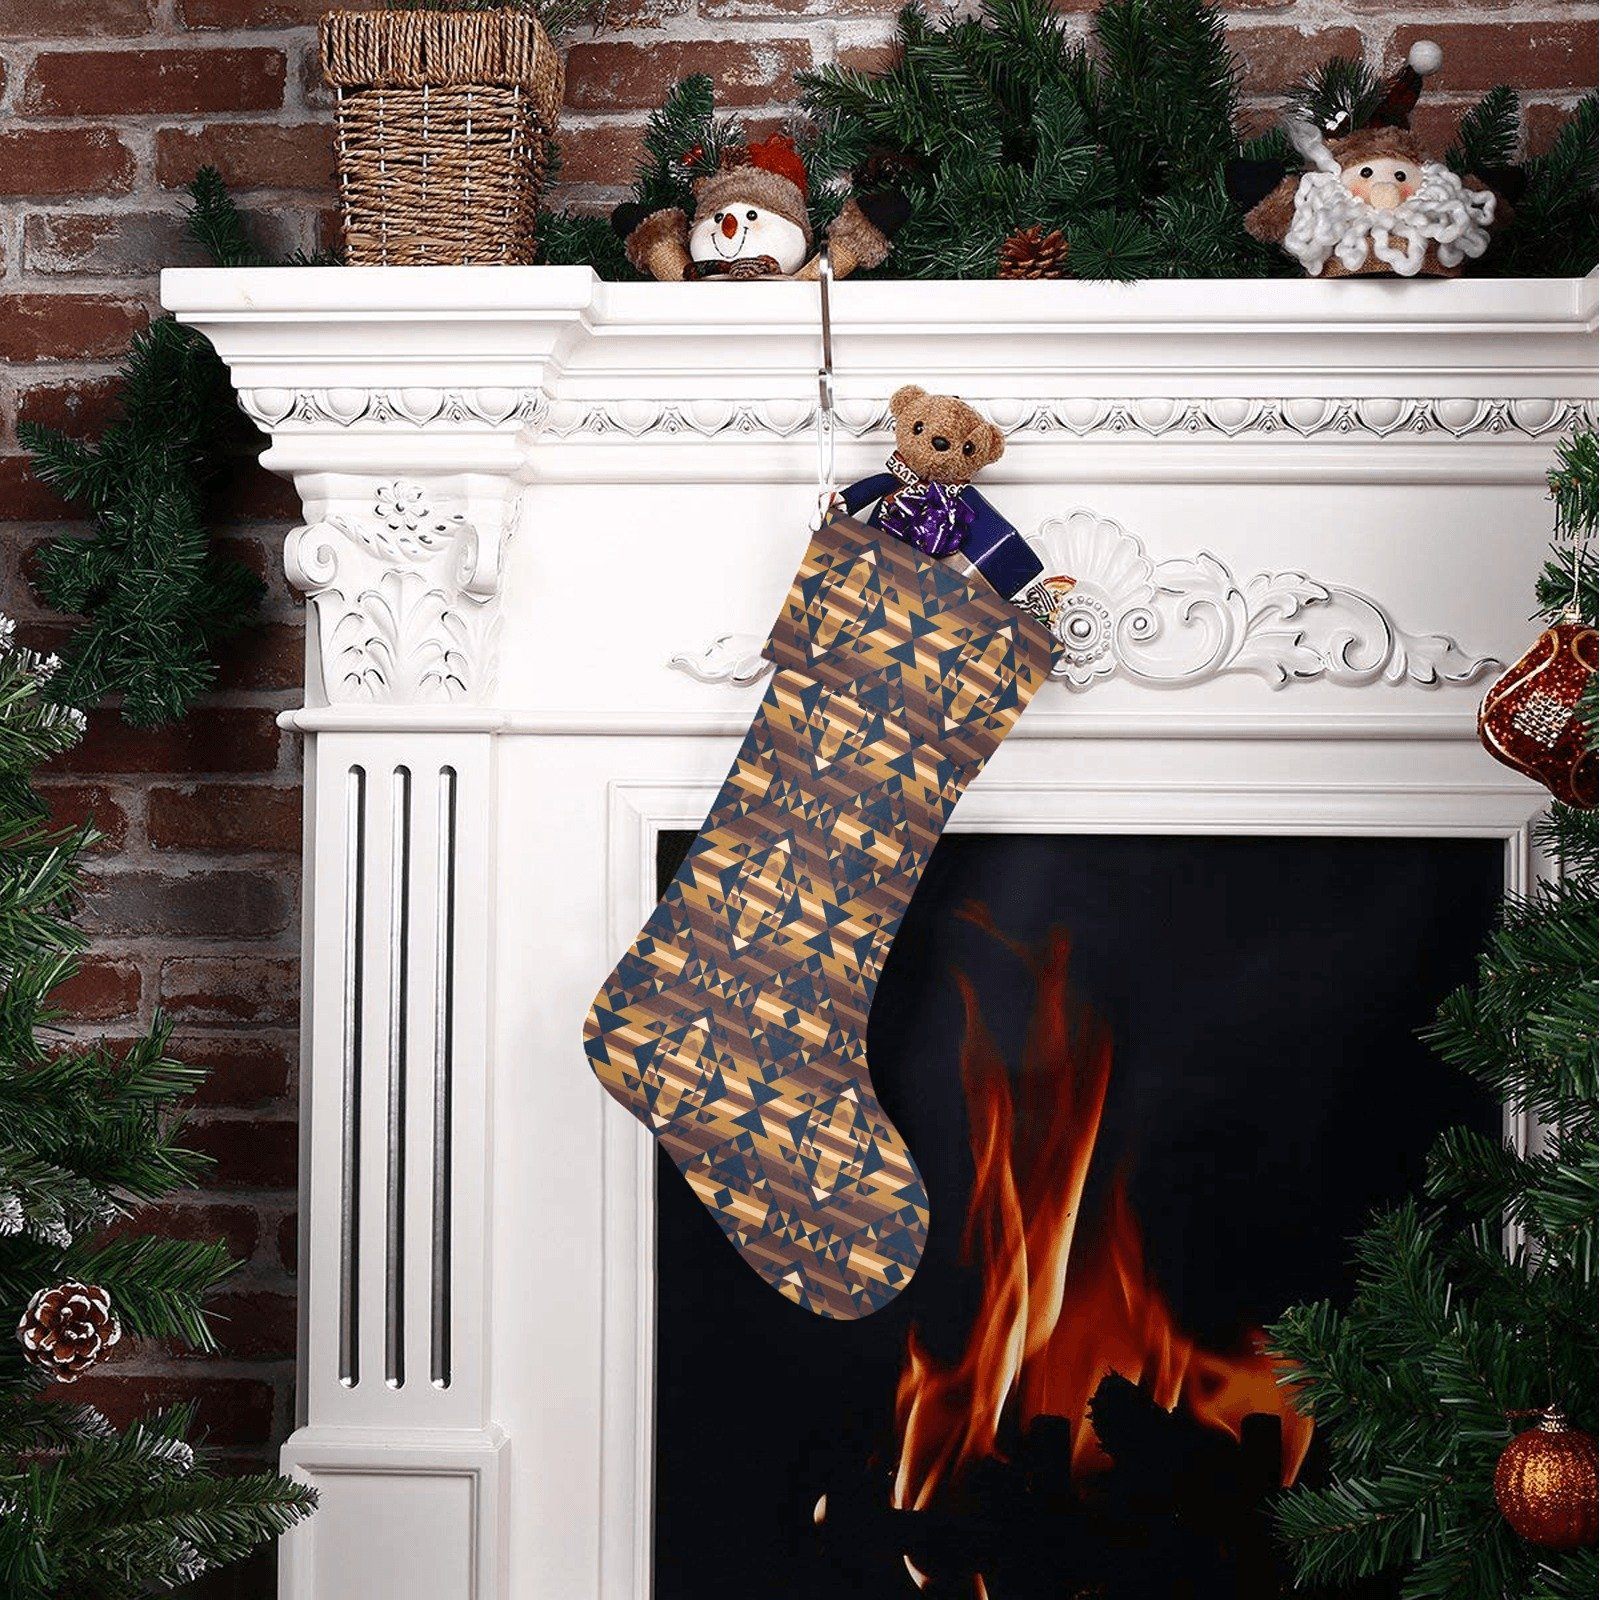 Marron Cloud Christmas Stocking holiday stocking e-joyer 